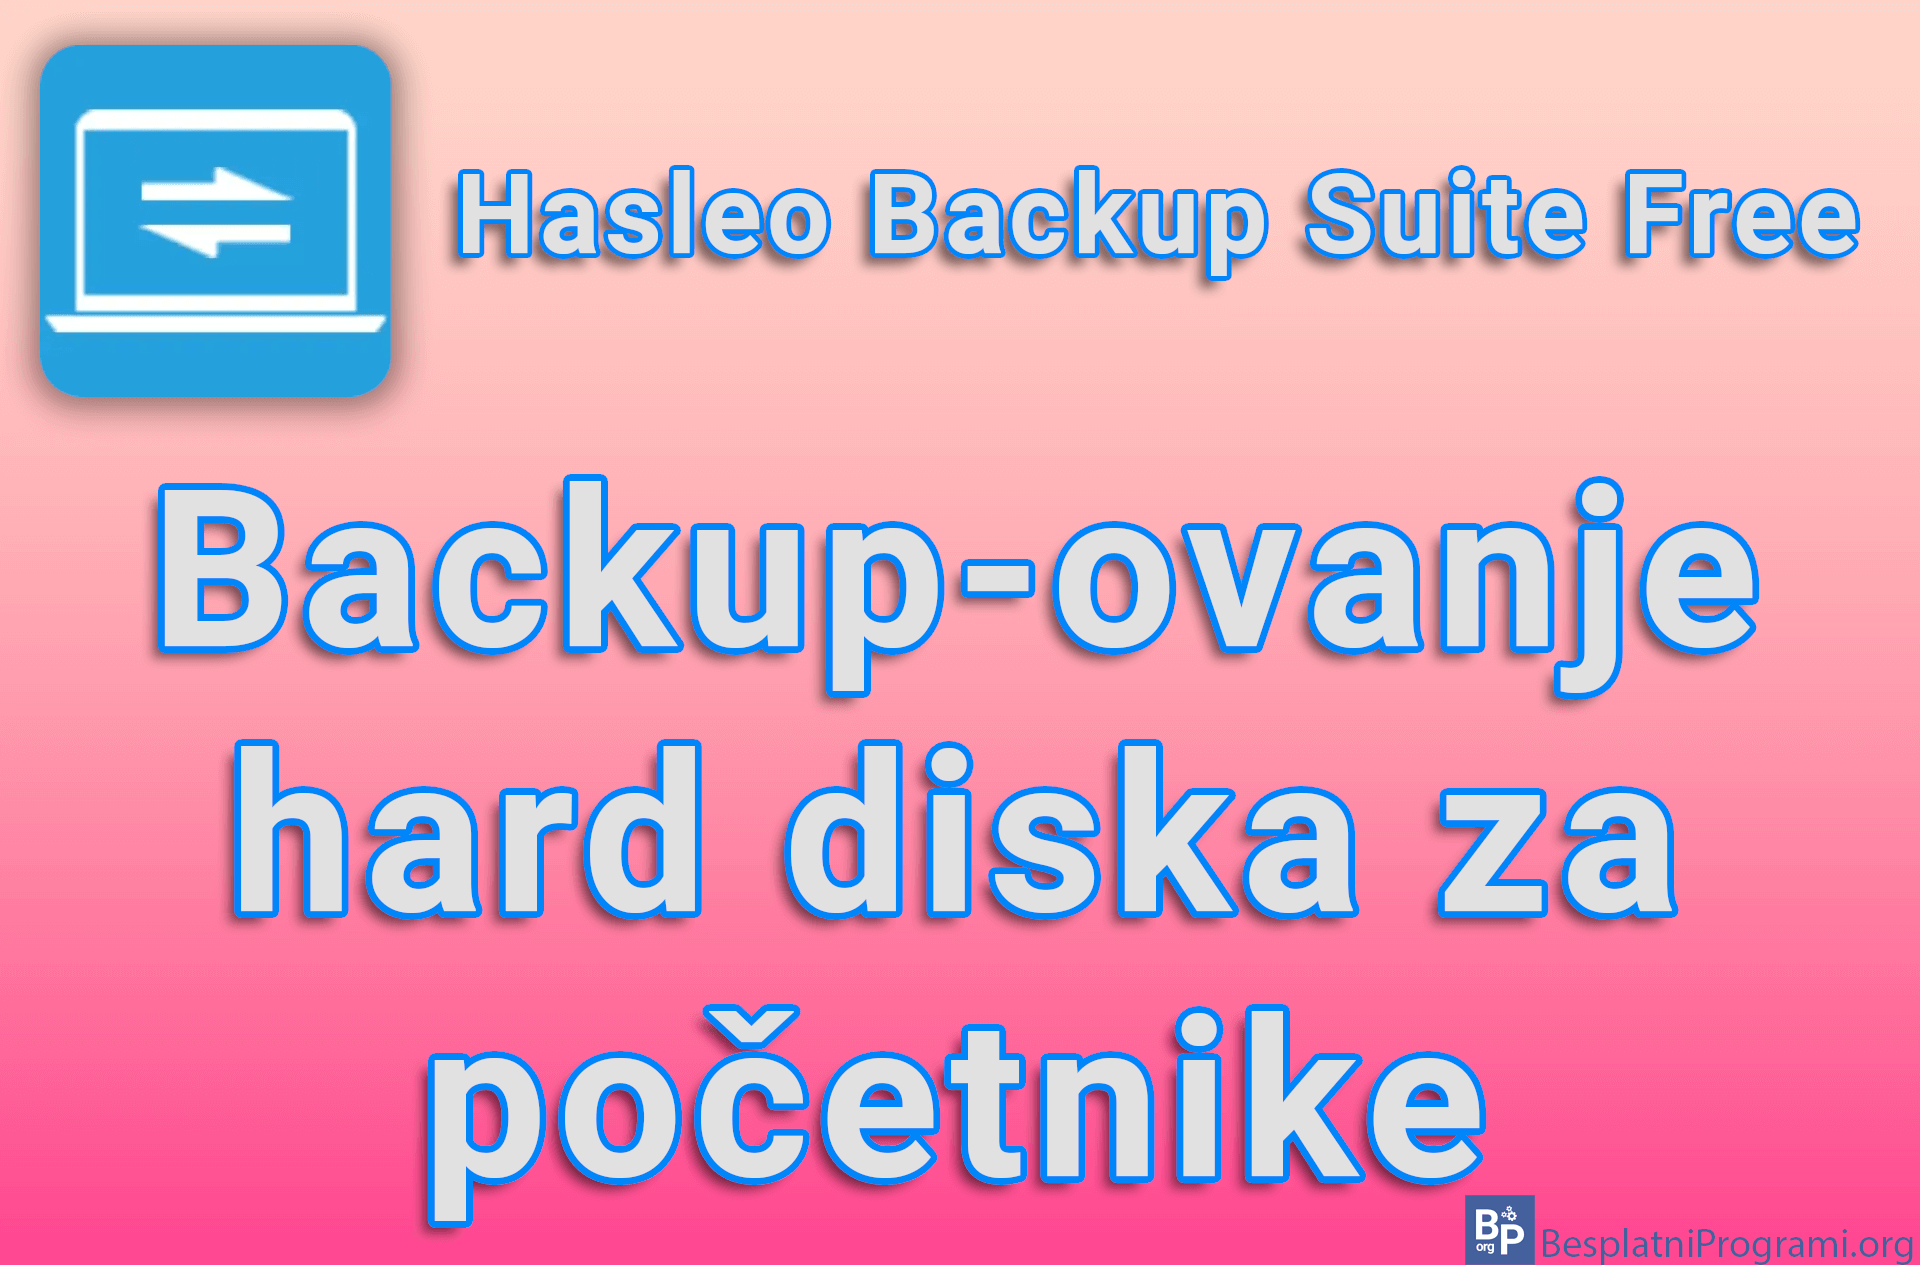 Hasleo Backup Suite Free – Backup-ovanje hard diska za početnike